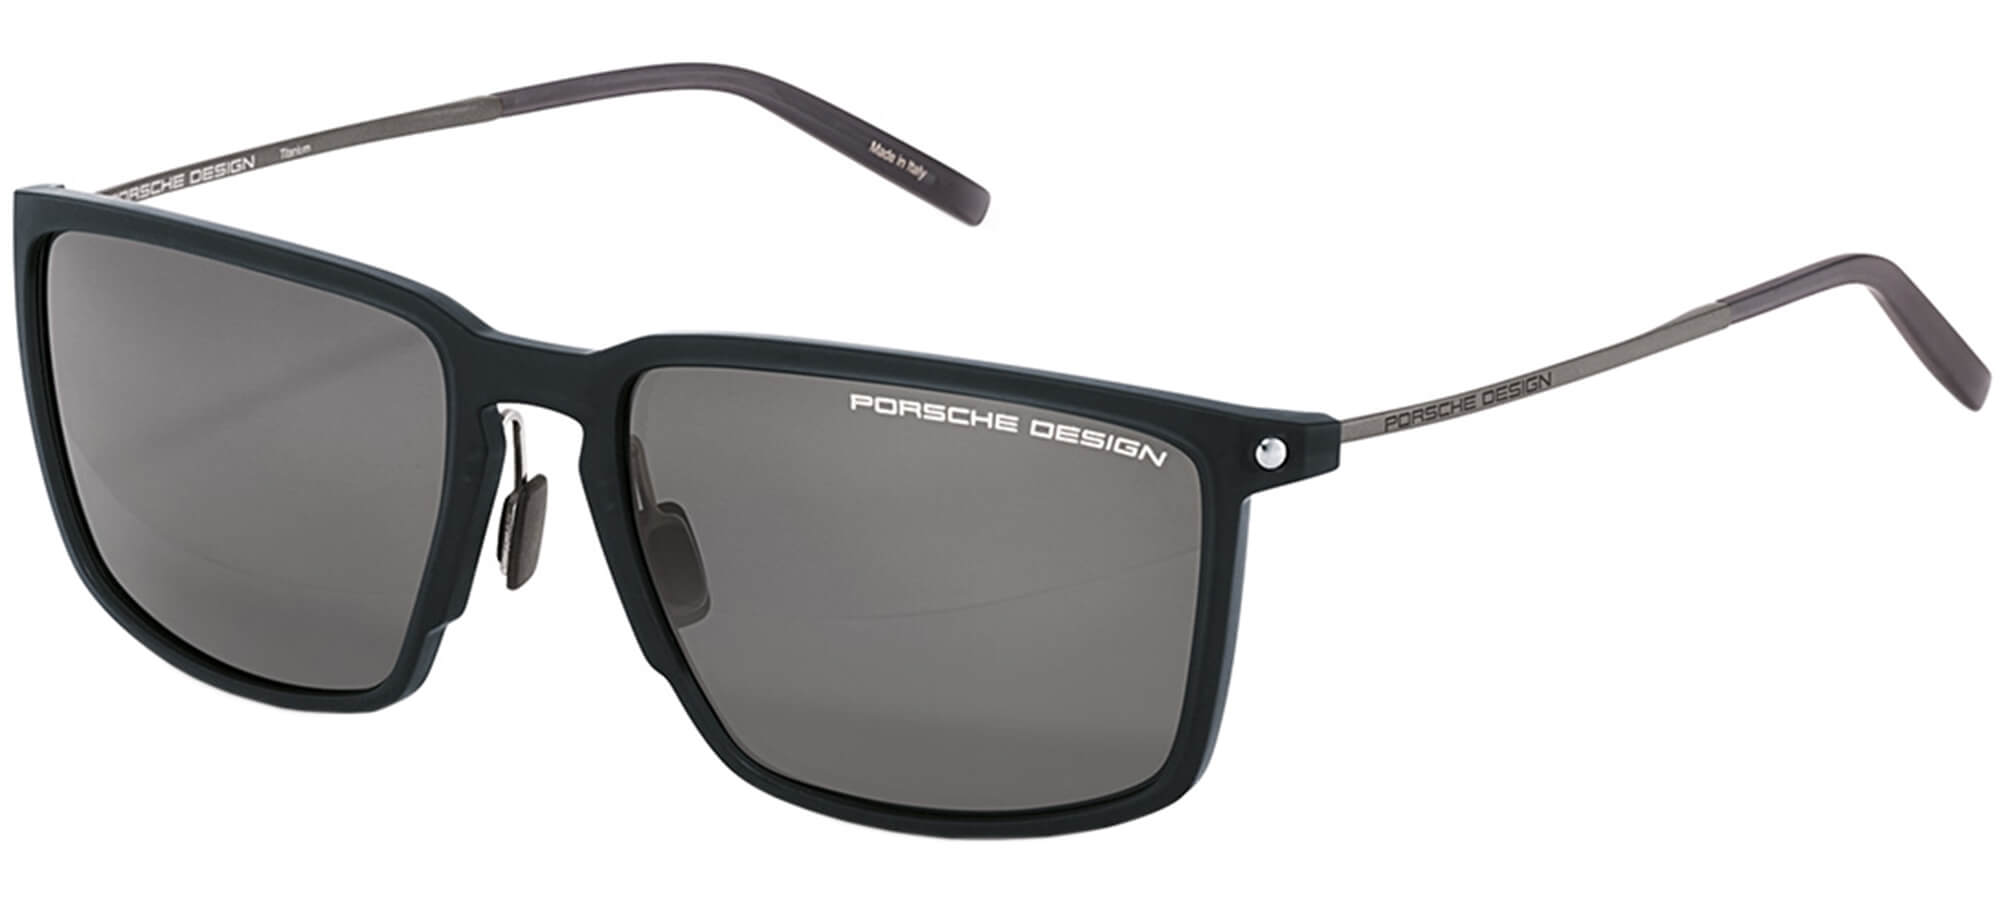 Porsche DesignP'8661Black/grey (A VC)